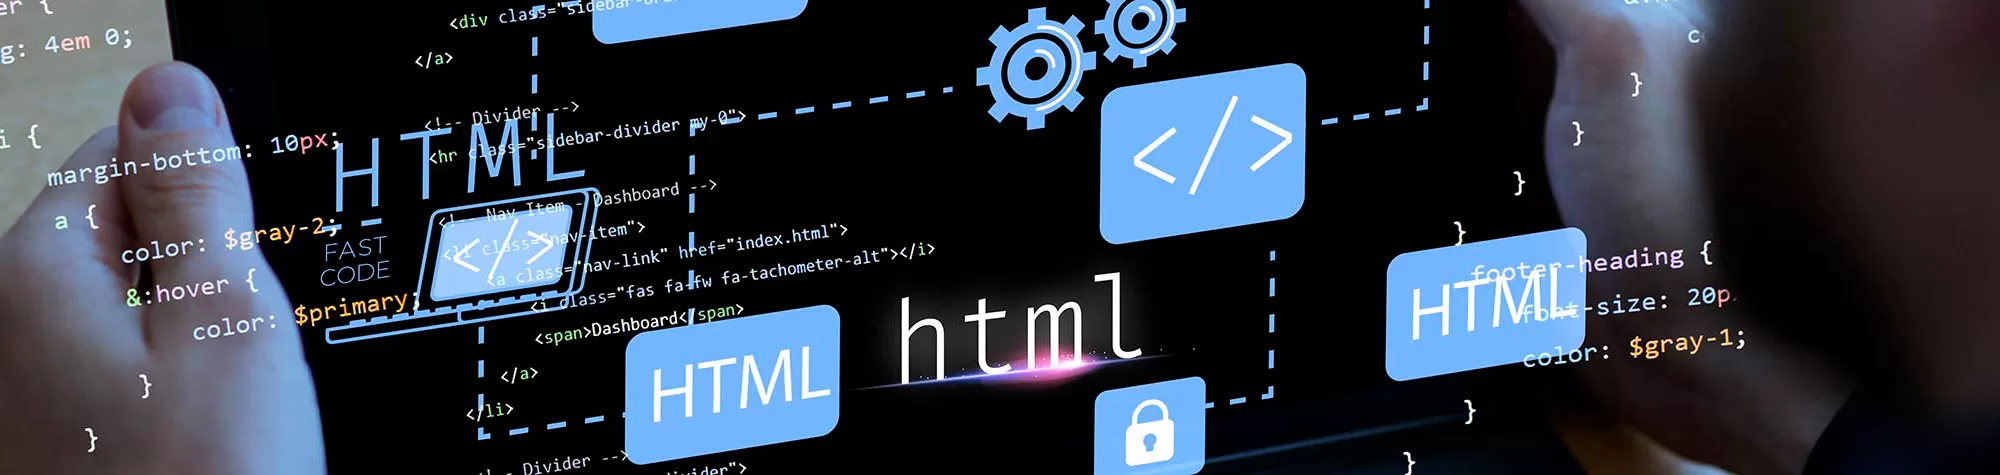 สร้างหน้าเว็บแรกของคุณด้วย HTML